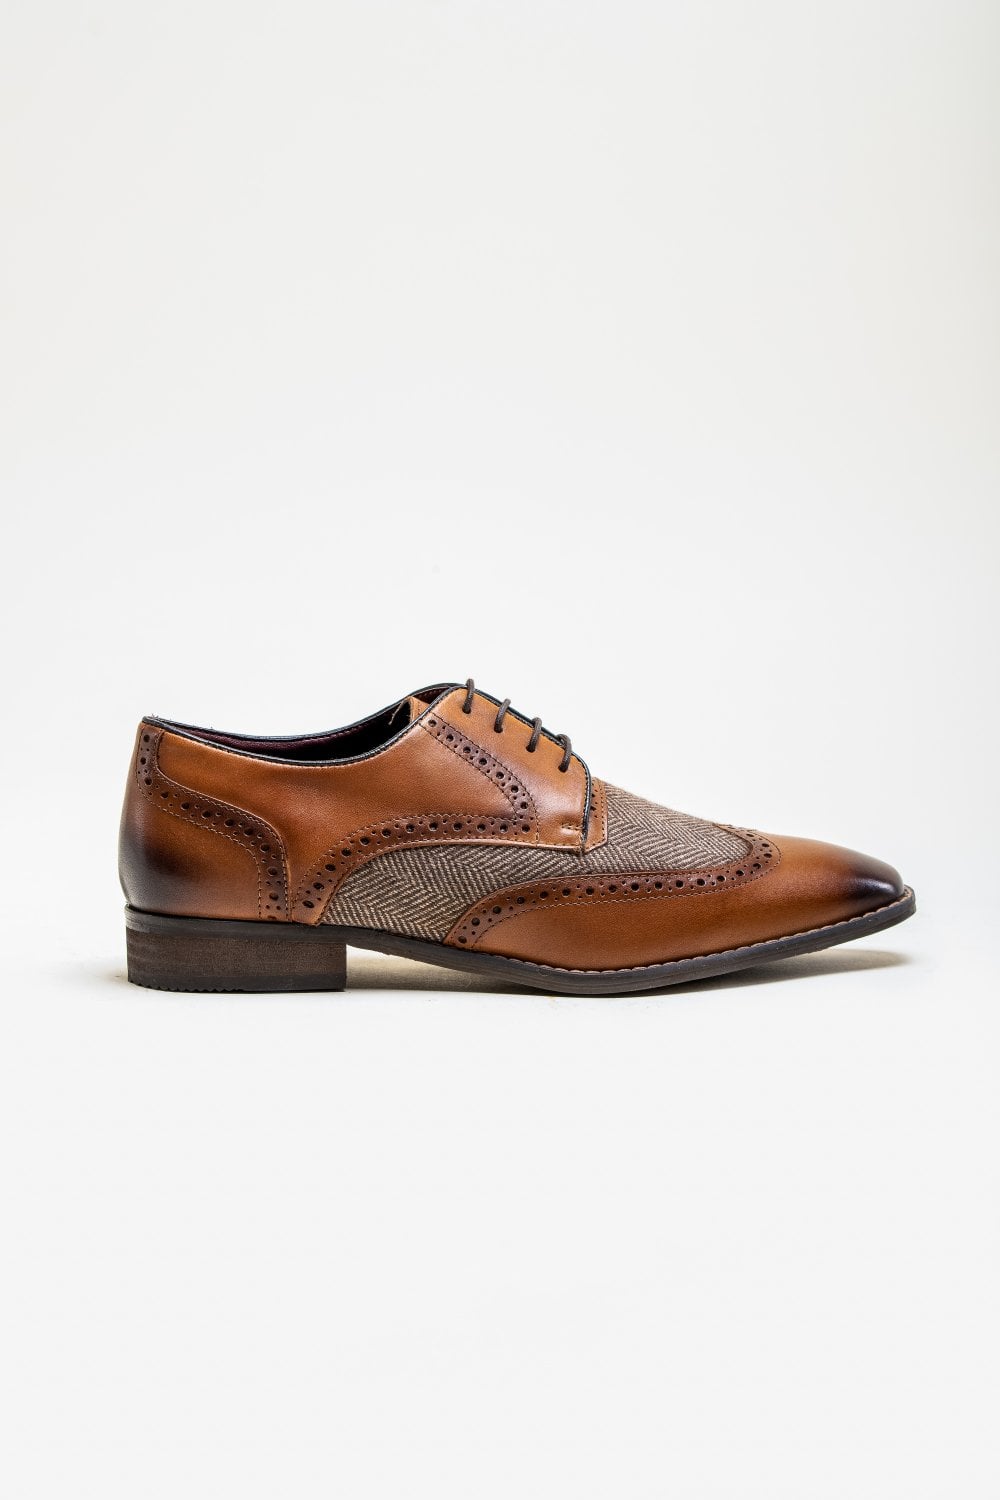 Cavani Faro Tweed Schoenen - Brown - schoenen